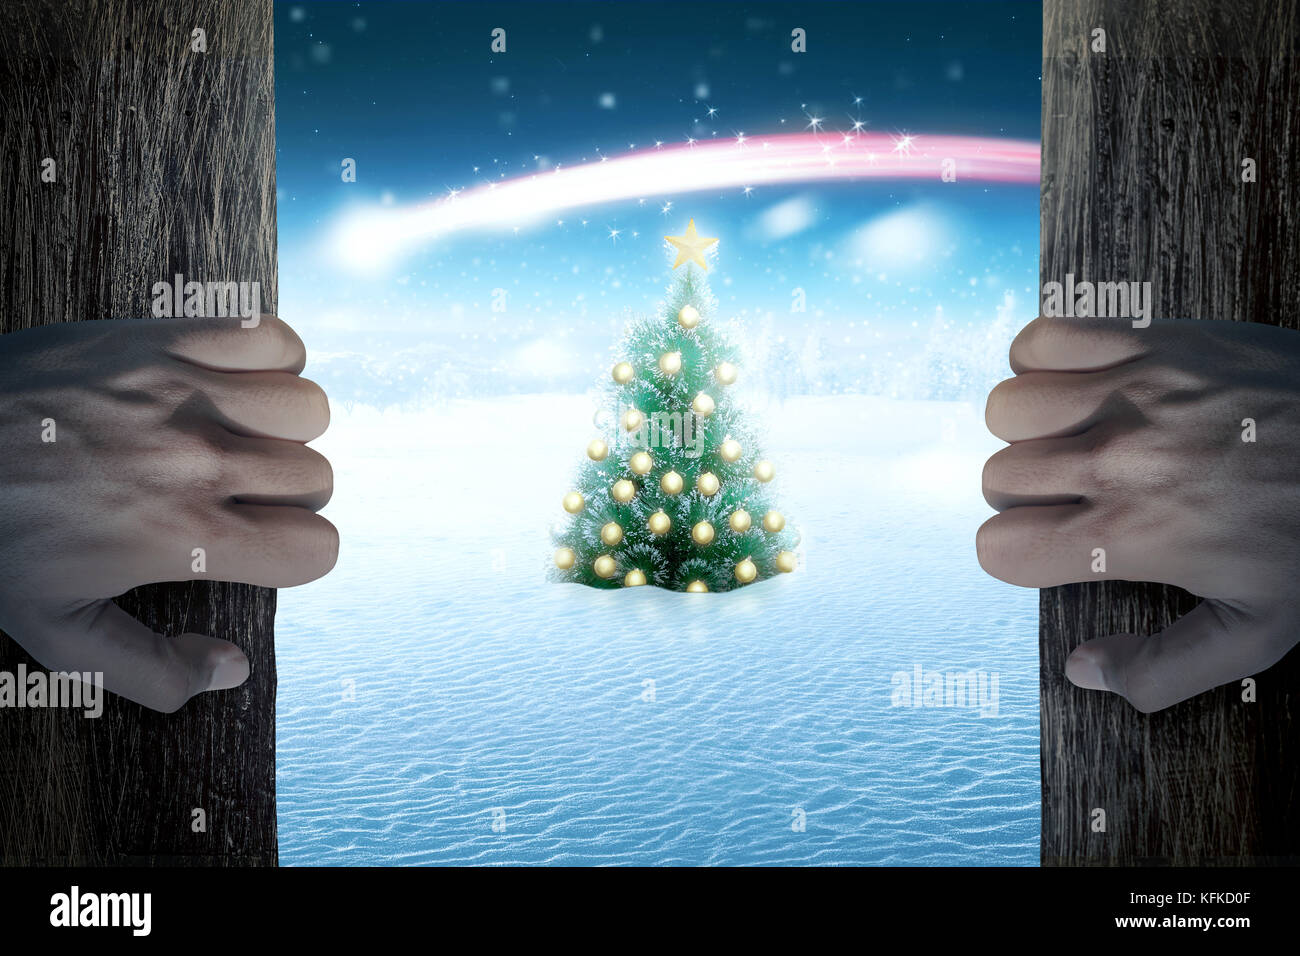 La main de l'ouvrir la porte et à arbre de Noël sur le champ neigeux Banque D'Images